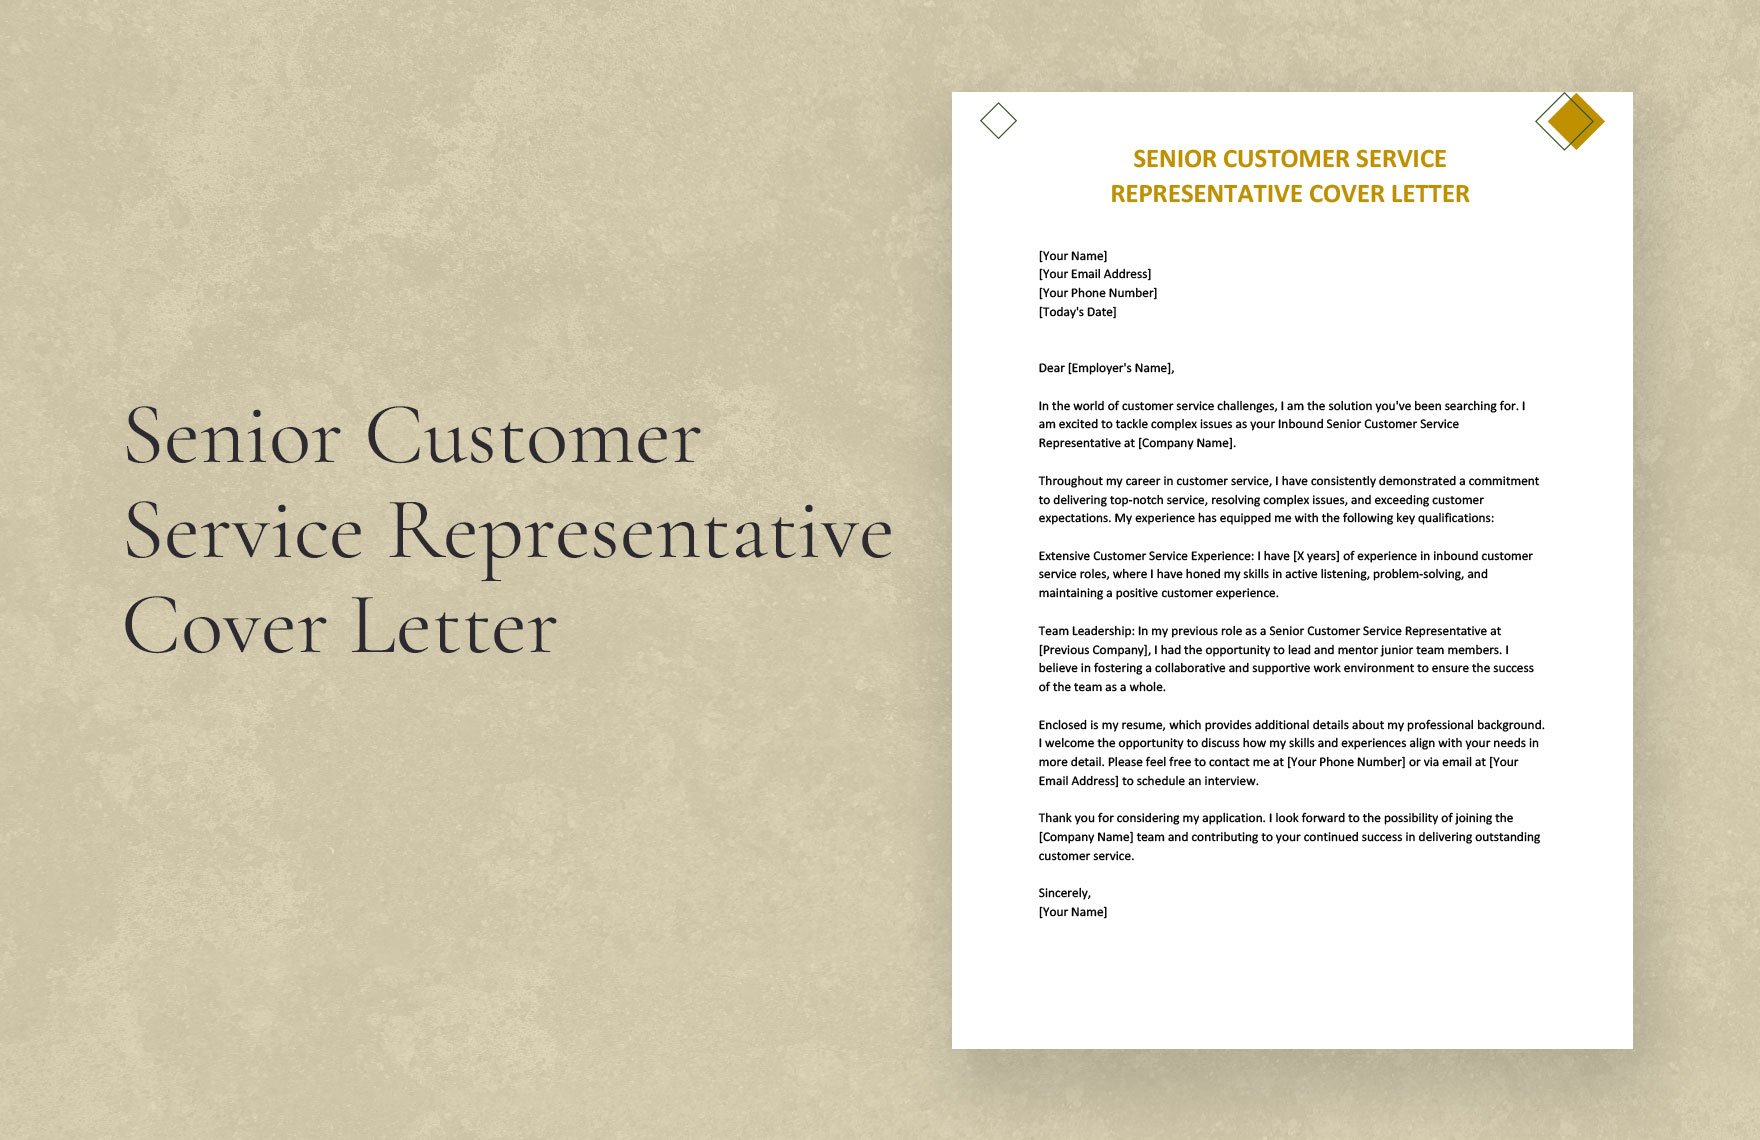 Senior Customer Service Representative Cover Letter